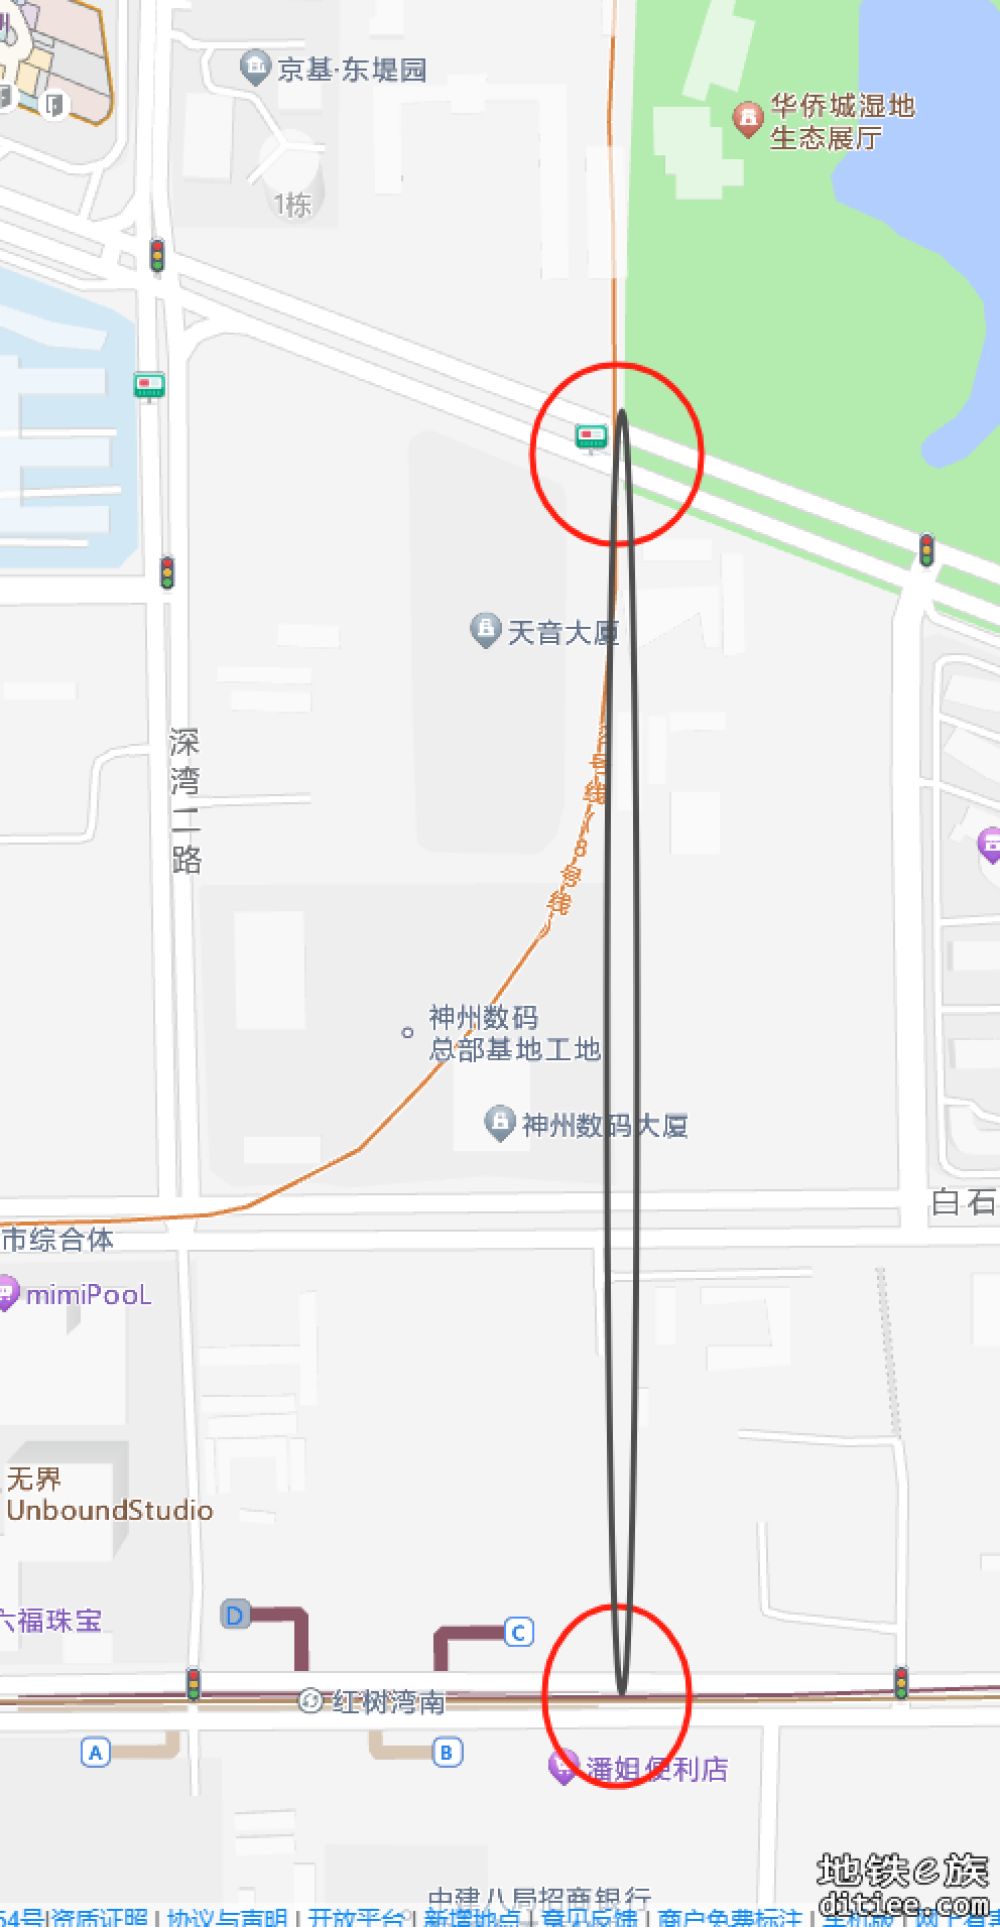 《深圳市轨道交通29号线交通详细规划(红树湾南至兴东段)》（草案）的公示